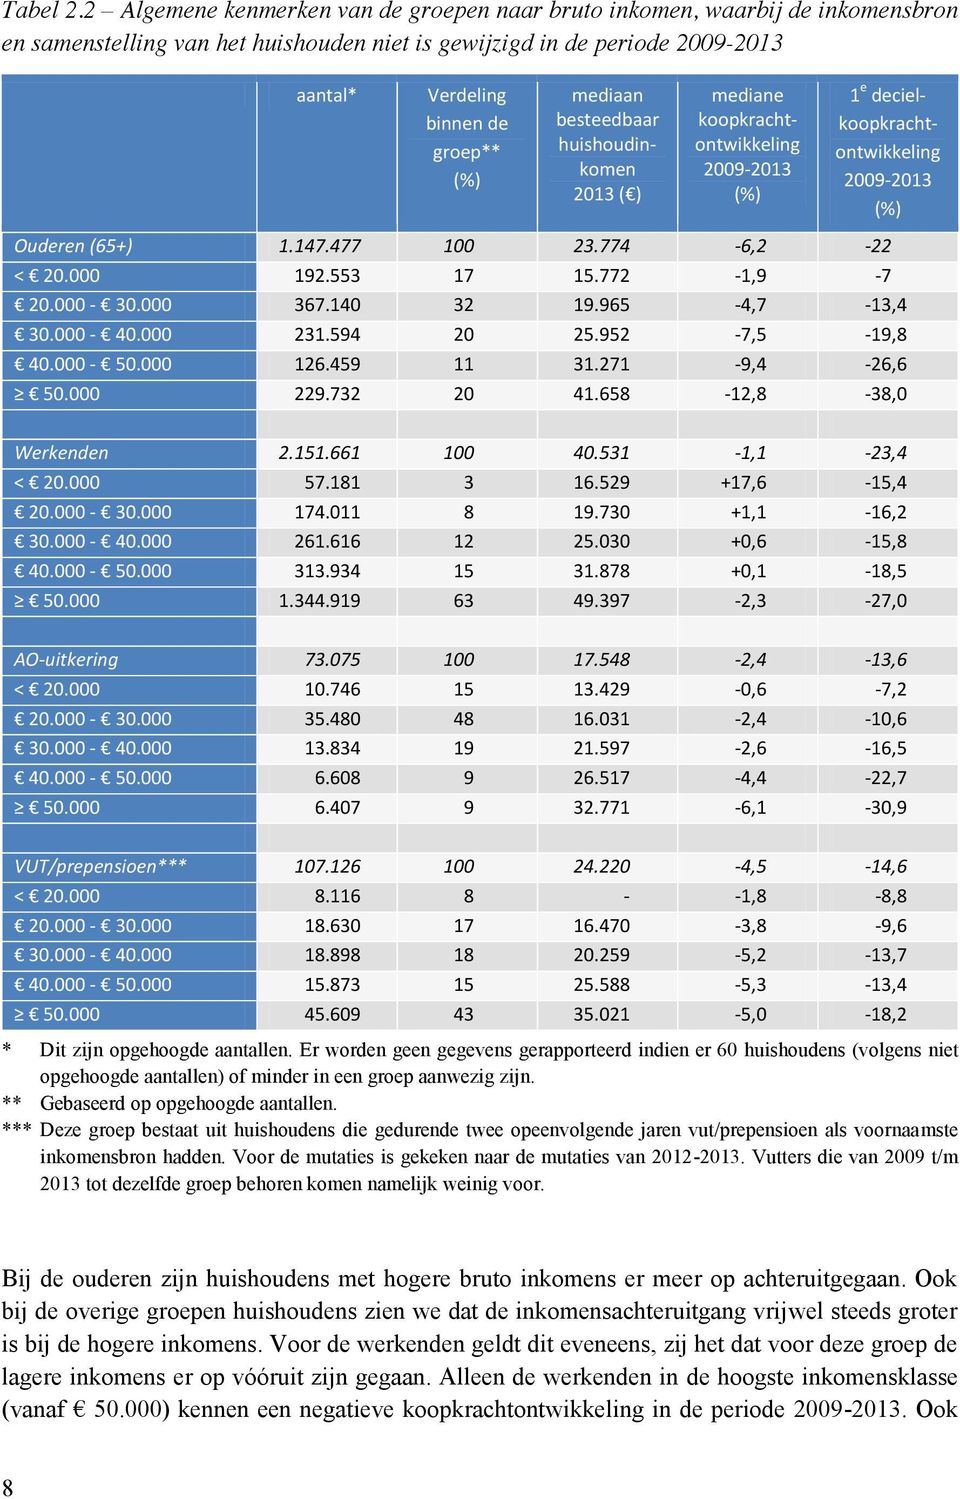 mediaan besteedbaar huishoudinkomen 2013 ( ) mediane koopkrachtontwikkeling 2009-2013 (%) 1 e decielkoopkrachtontwikkeling 2009-2013 (%) Ouderen (65+) 1.147.477 100 23.774-6,2-22 < 20.000 192.